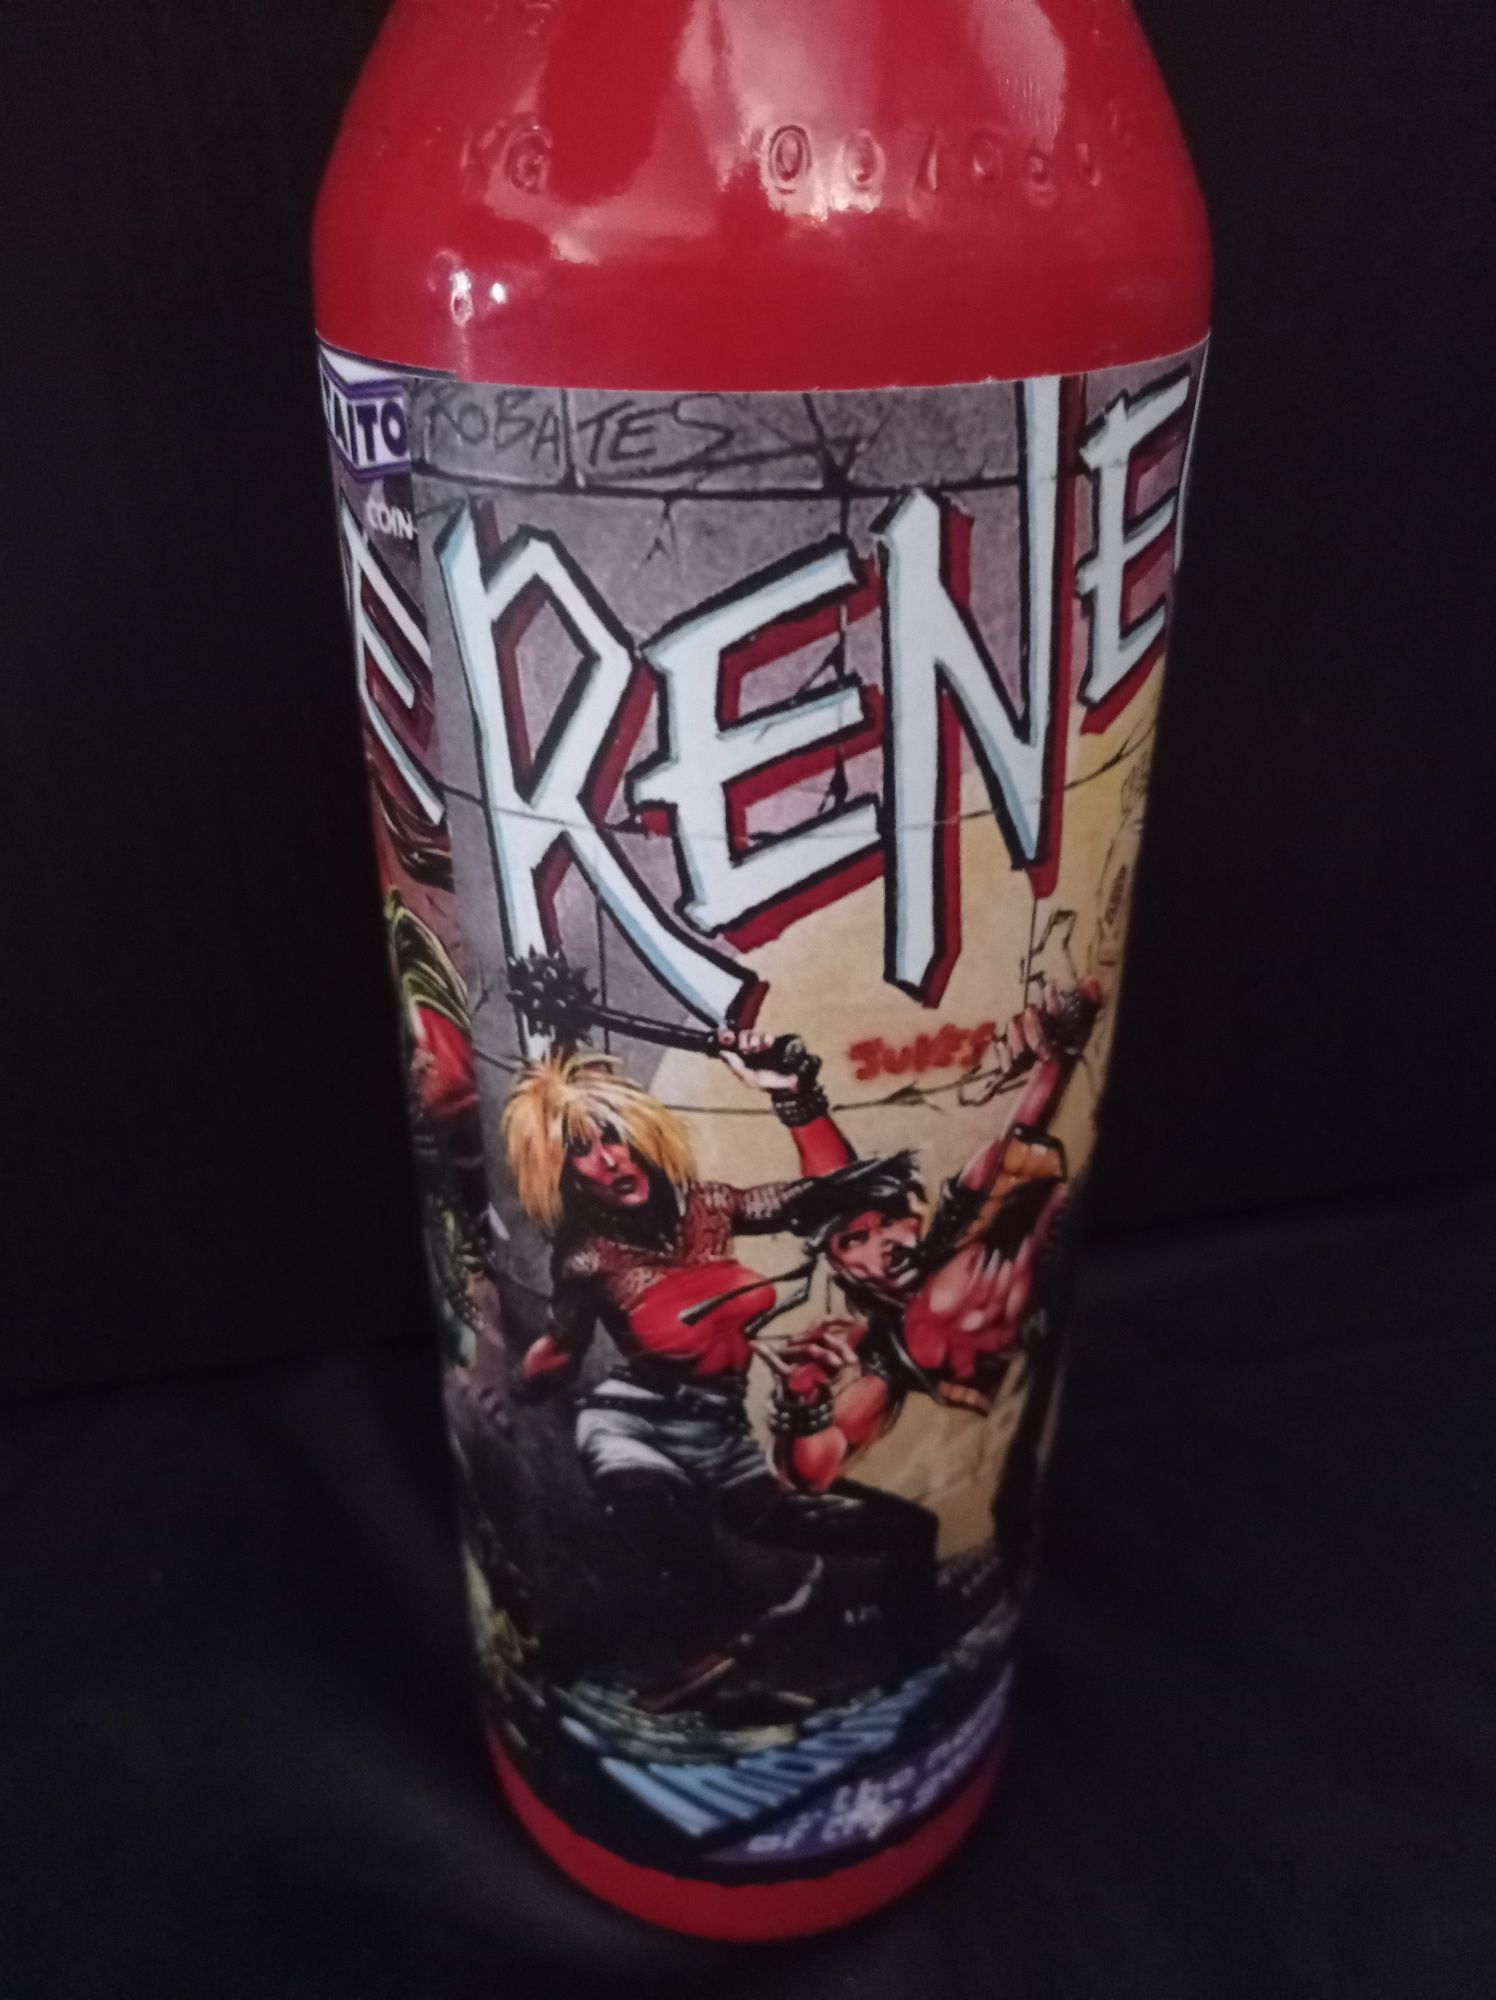 Renegade fire extinguisher, extintor com motivo Renegade Spectrum